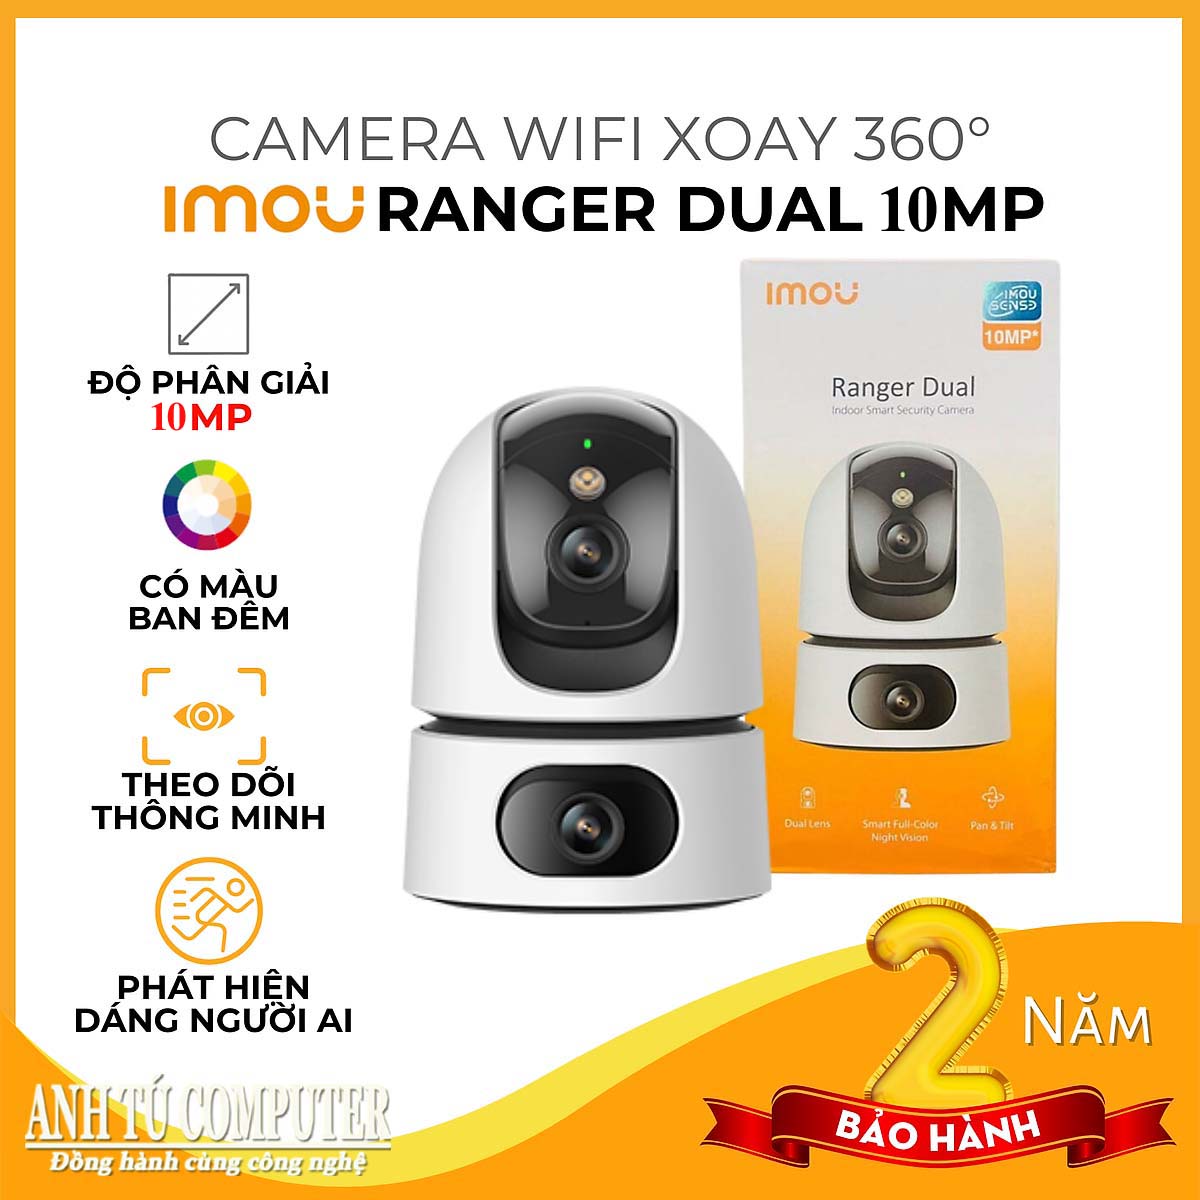 Camera Wifi iMOU Ranger Dual 10MP IPC-S2XP-10M0WED 2 mắt hàng chính hãng